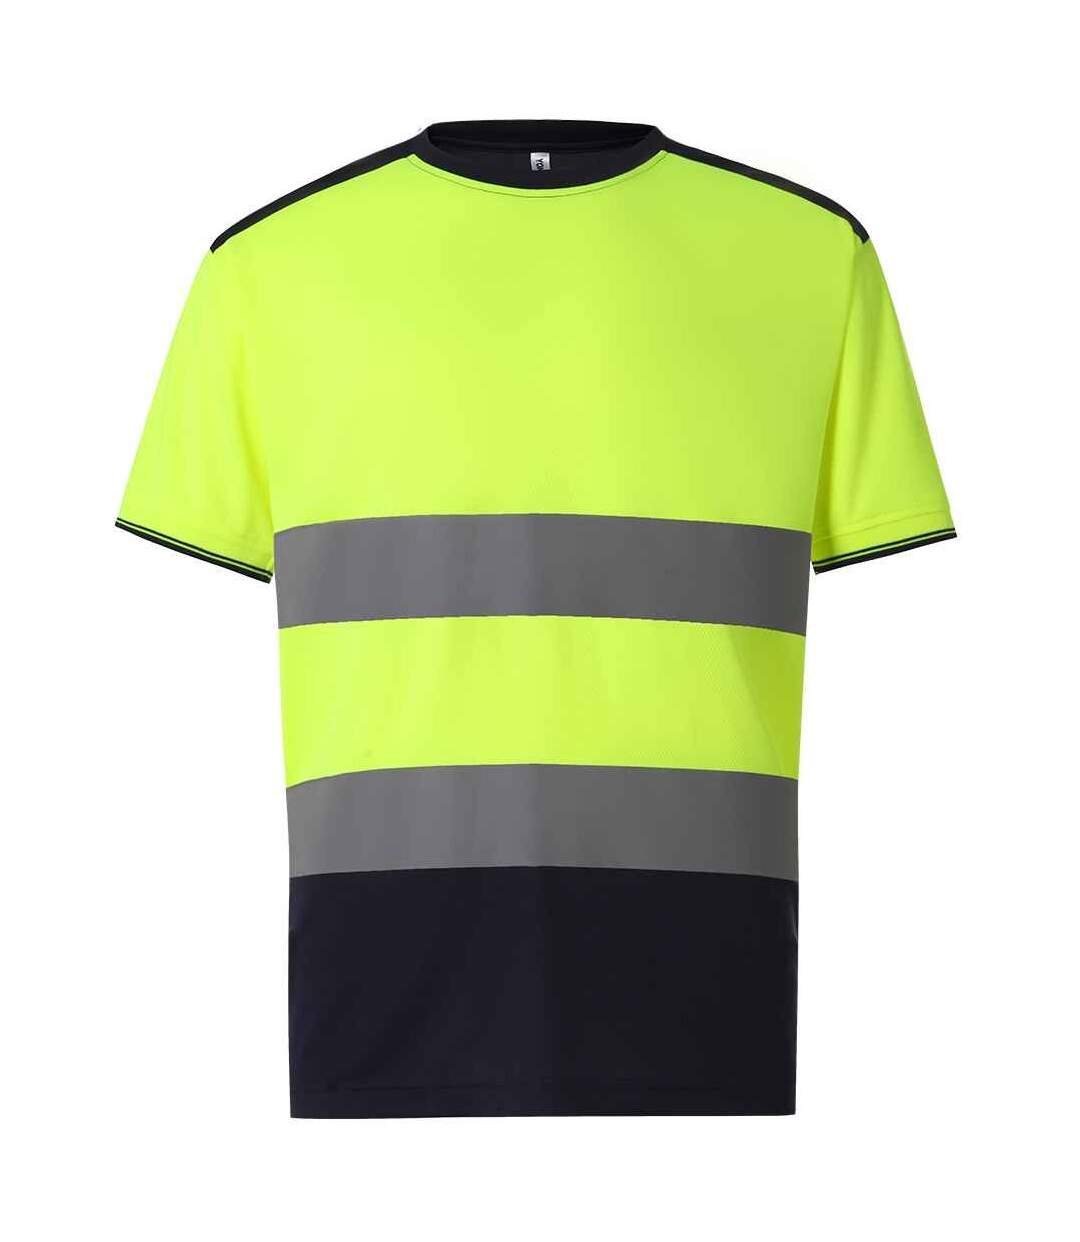 Yoko Mens Two Tone Hi-Vis T-Shirt (Yellow/Navy) - UTPC4280